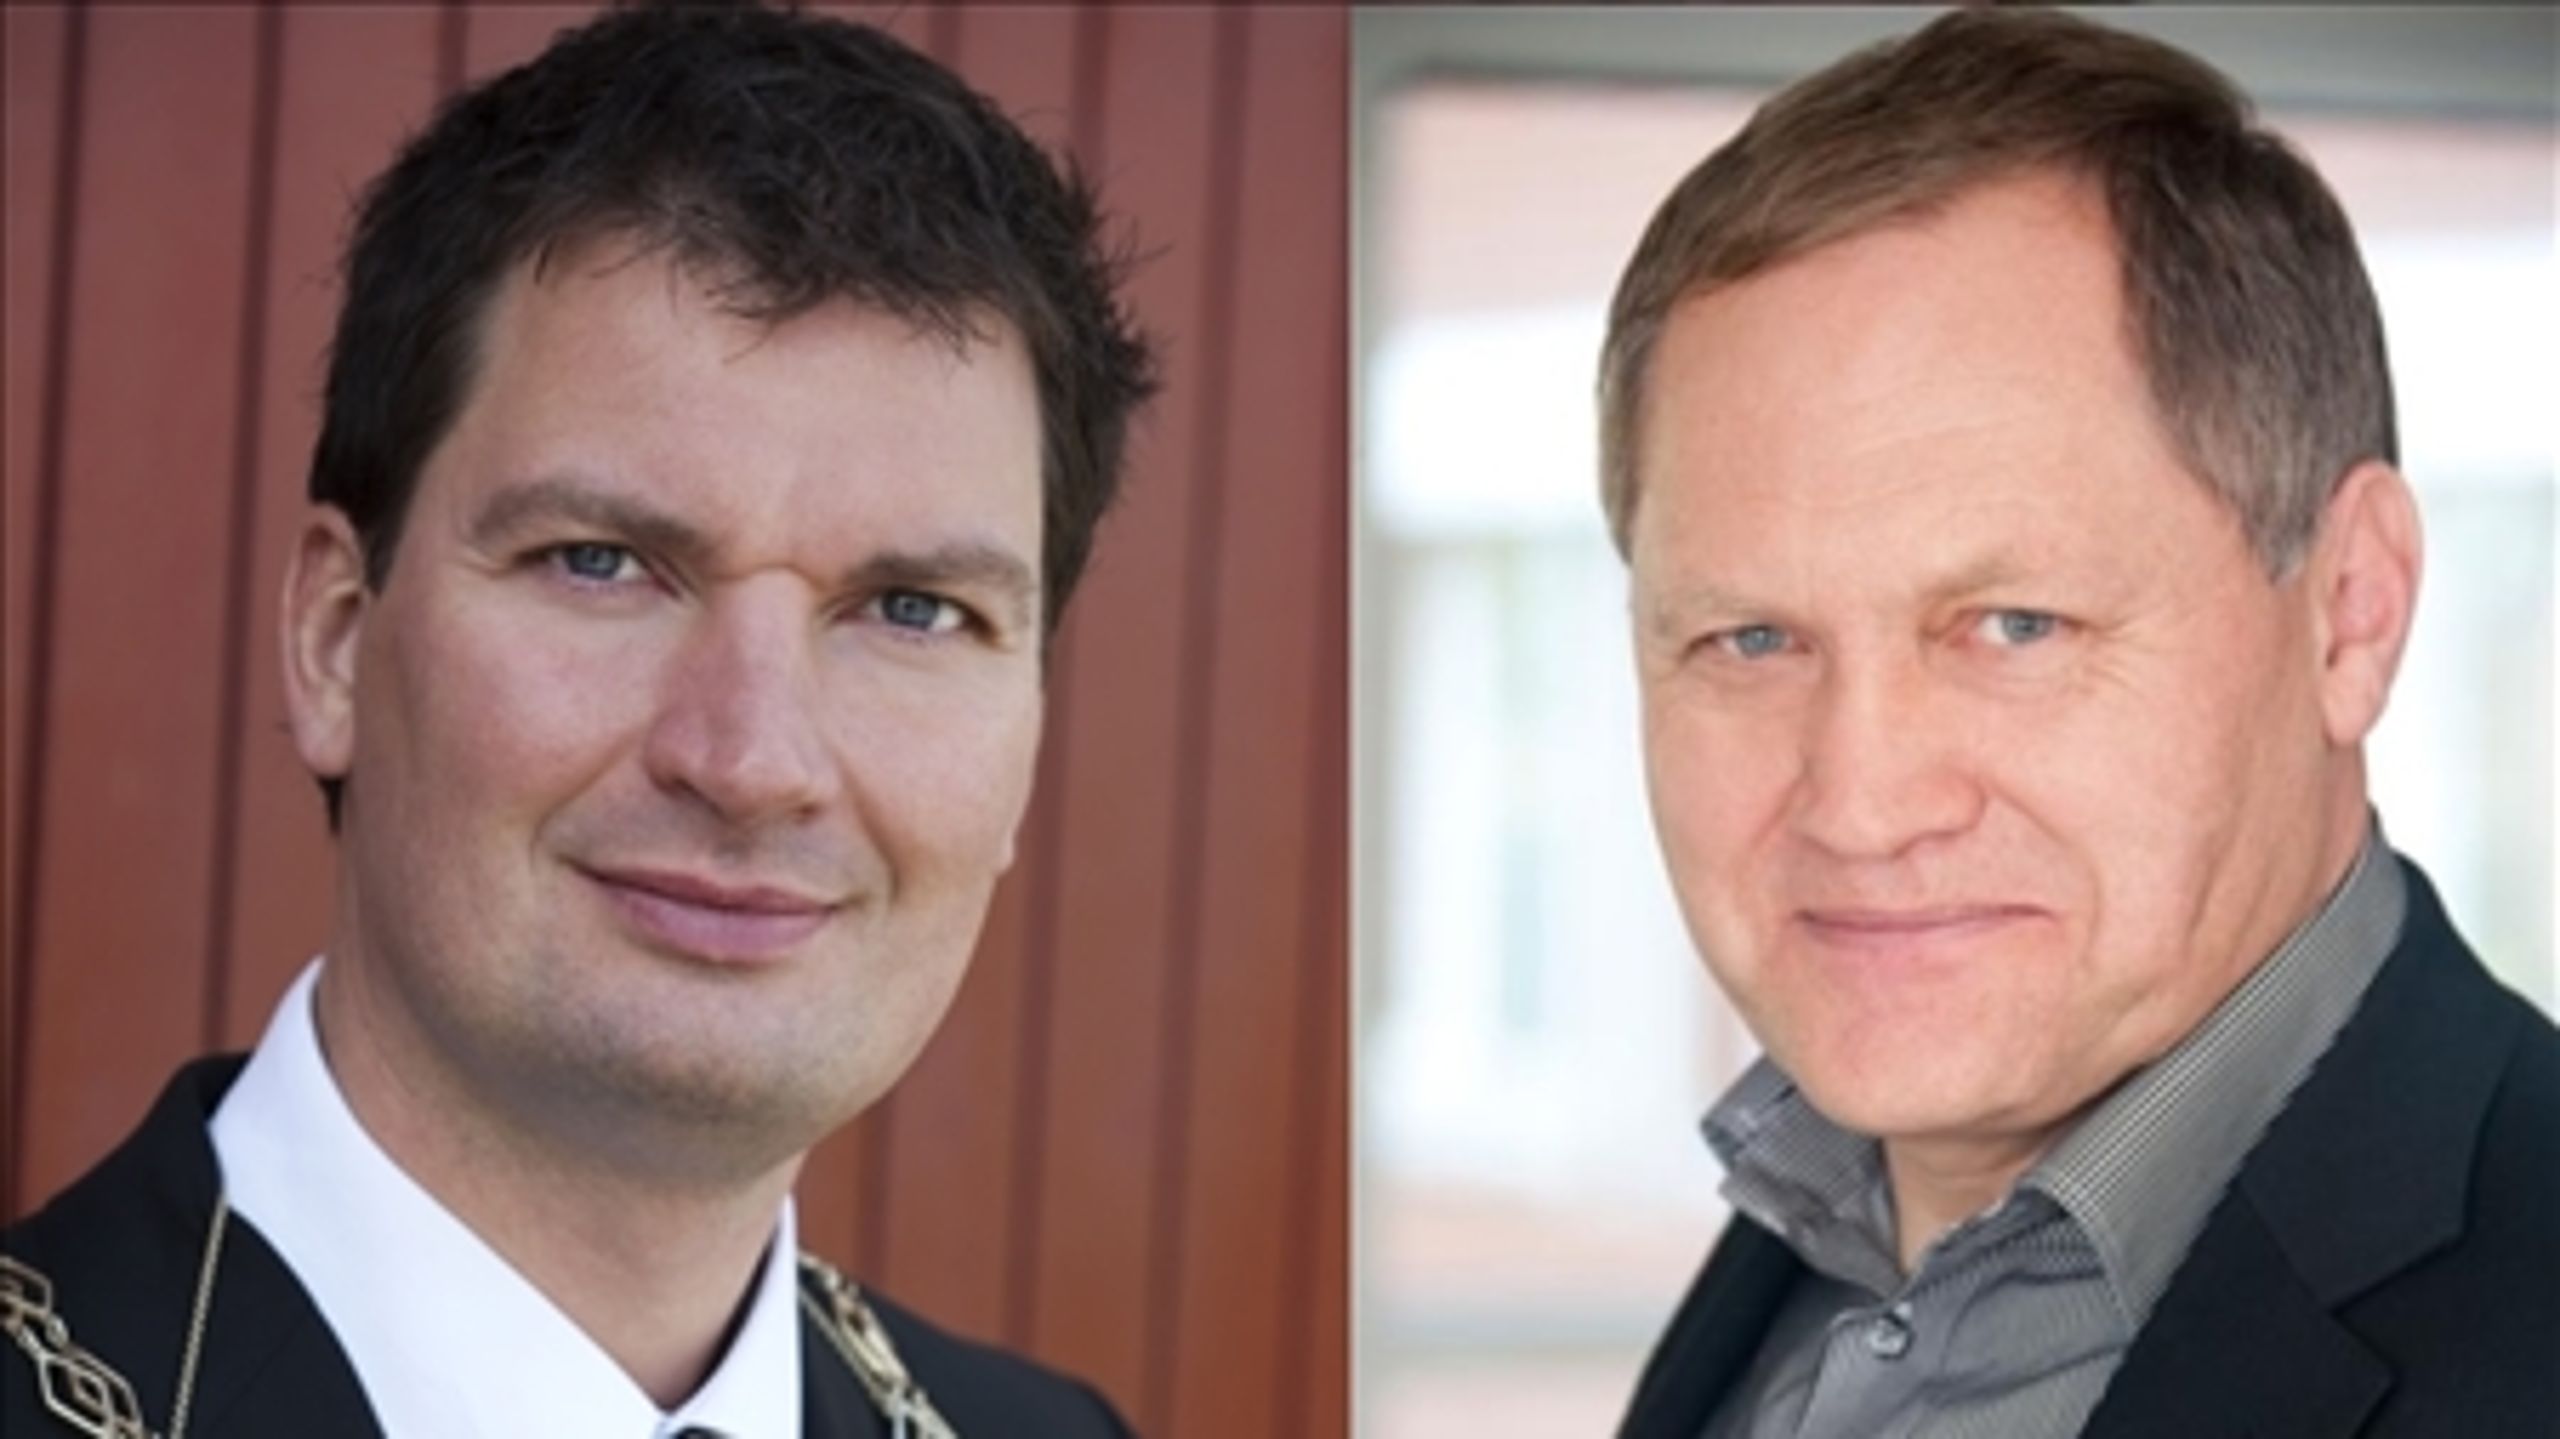 Kommunaldirektør Bjarke Steen Johansen (til højre i billedet) vil ikke deltage i KL's undersagelse af hans anklager om magtmisbrug og nepotisme mod Vallensbæks borgmester, Henrik Rasmussen (til venstre i billedet).